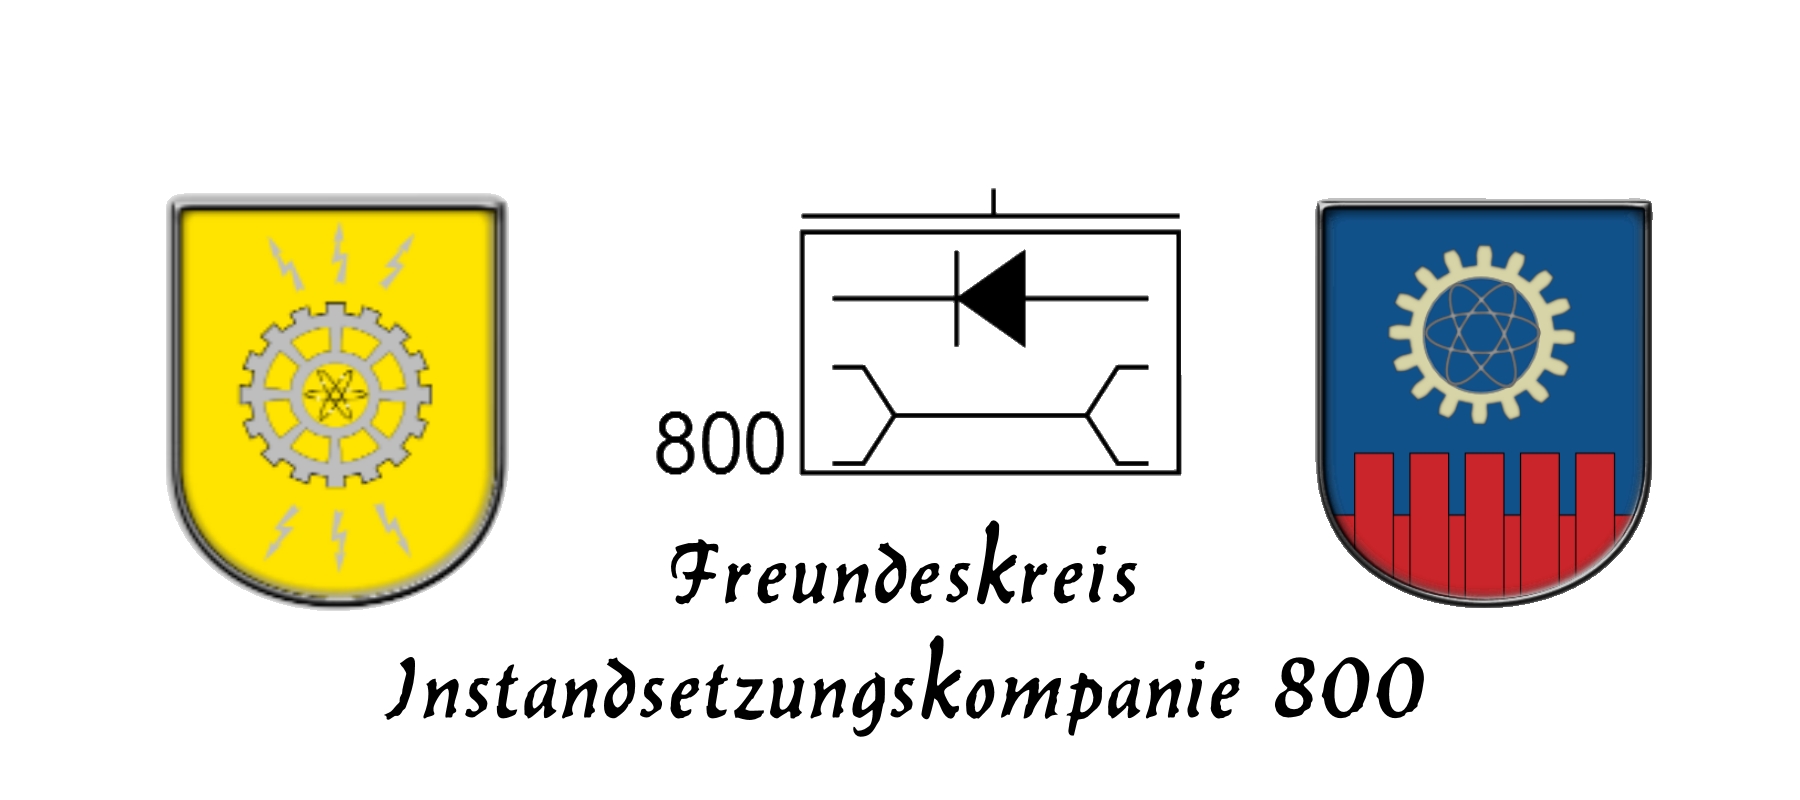 Wappen und Zeichen Banner mit Schrift_2.jpg